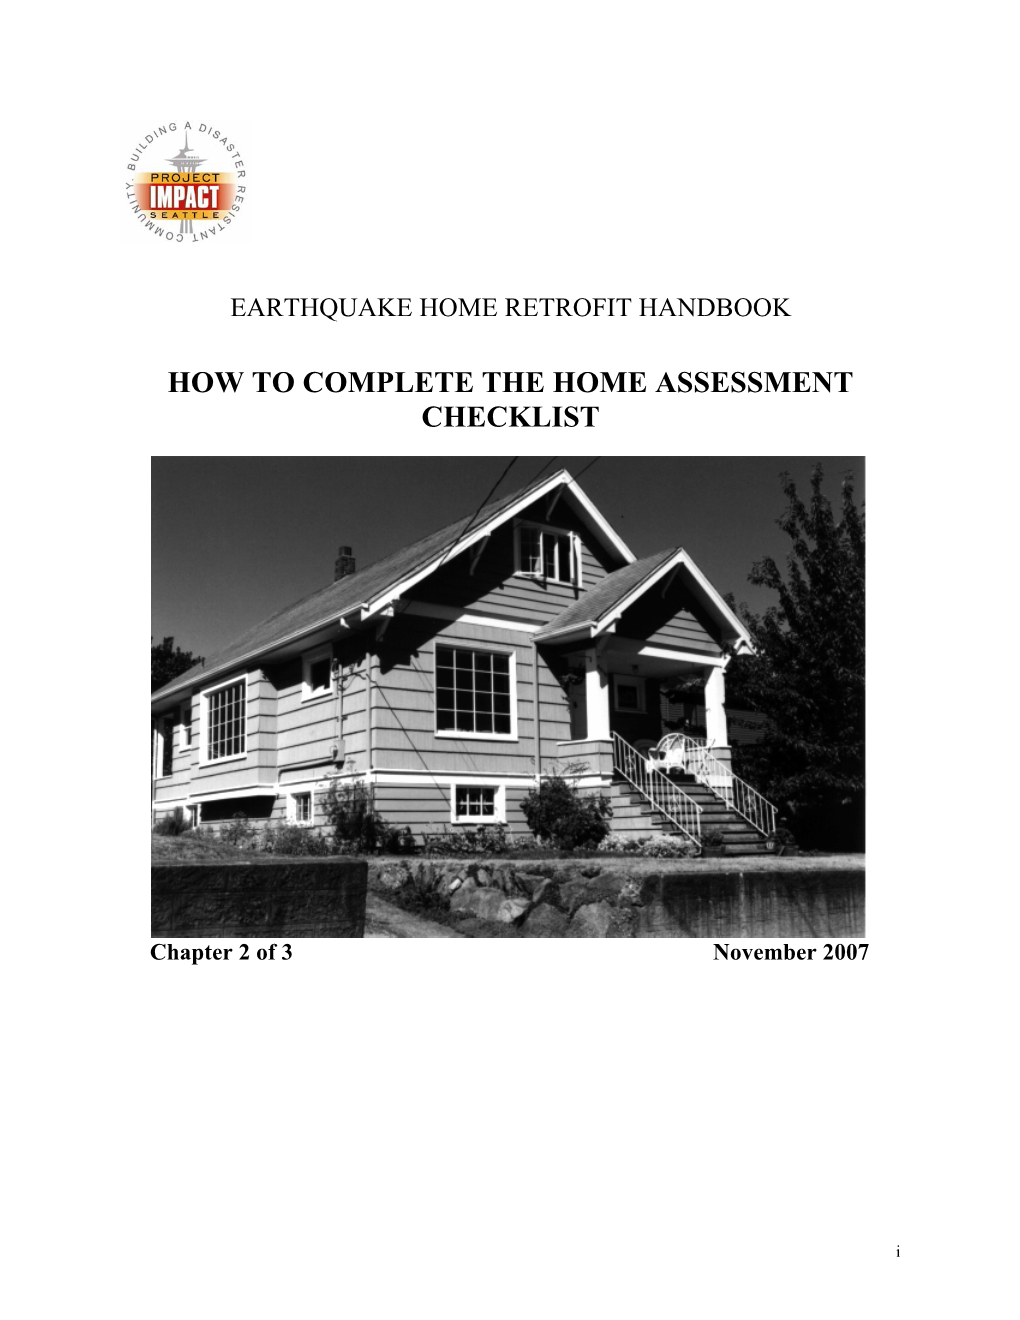 Earthquake Home Retrofit Handbook: Home Assessment Checklist